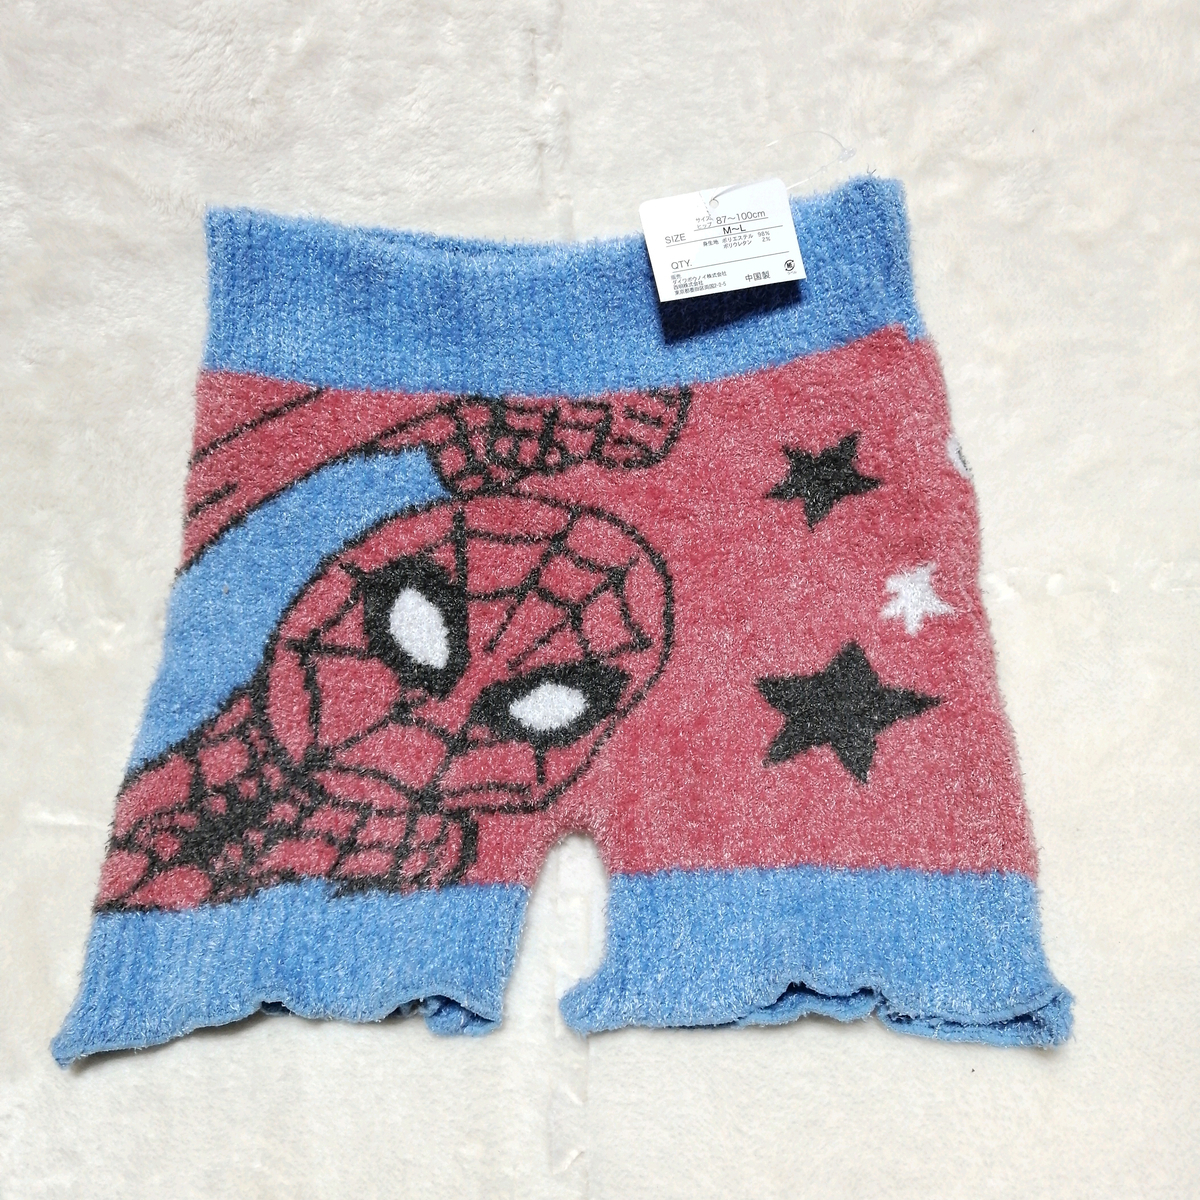 スパイダーマン マーベル ふわふわパンツ M-L あったかパンツ もこもこパンツ 雑貨 レディース キャラクター 毛糸のパンツ_画像1